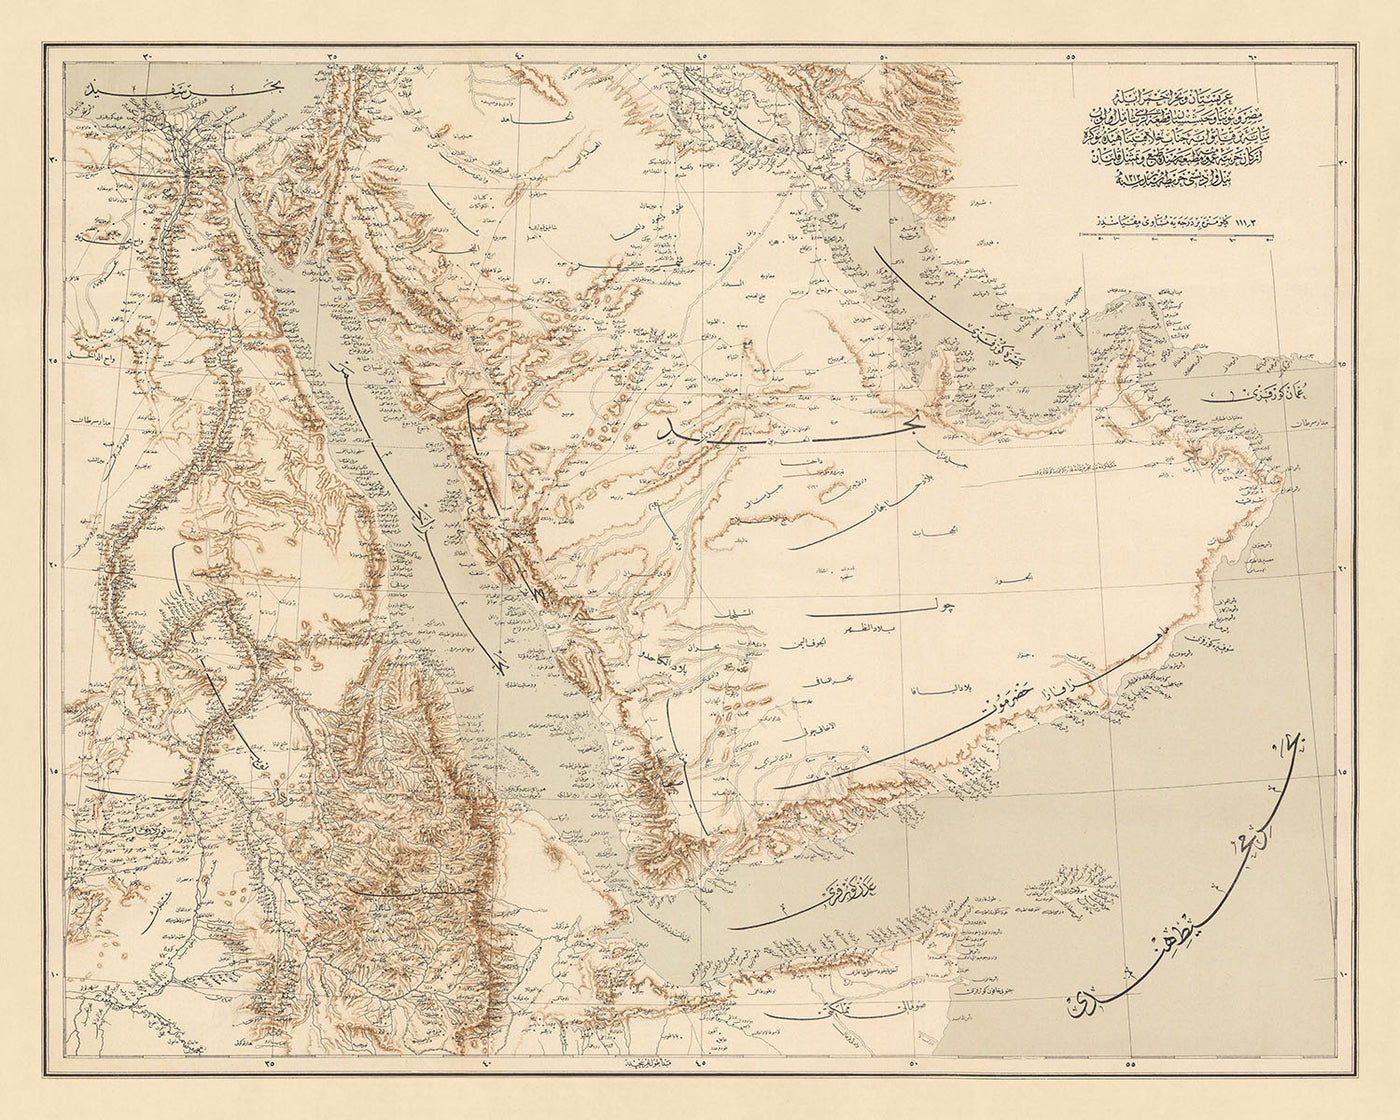 Ancienne carte de la péninsule arabique et de la mer Rouge par l'état-major général de l'armée ottomane, 1897 : fleuve Nil, Arabie saoudite et Irak, golfe Persique, Émirats arabes unis, mer Rouge